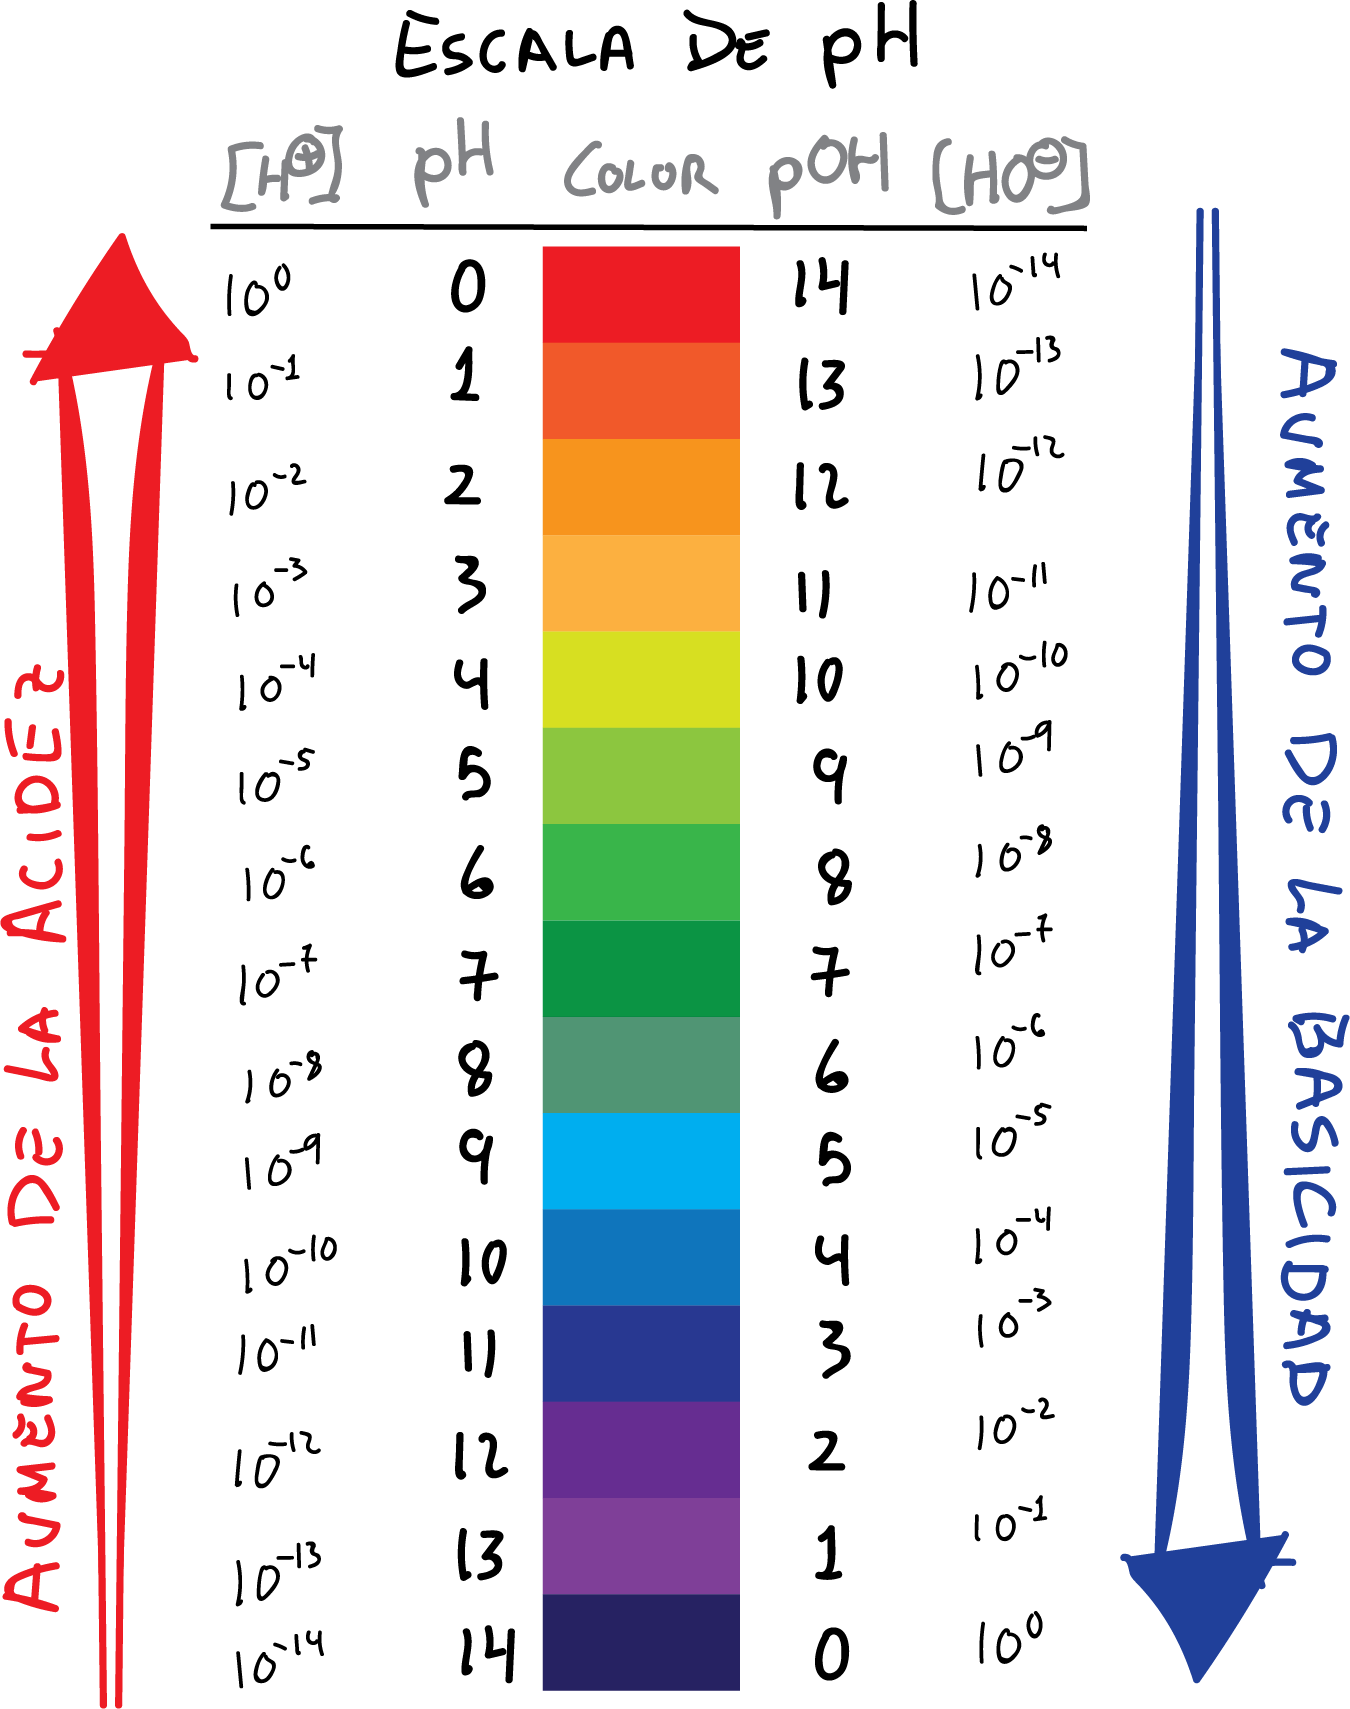 tabla escala de pH acidez basicidad color pH pOH [H+] [OH-]